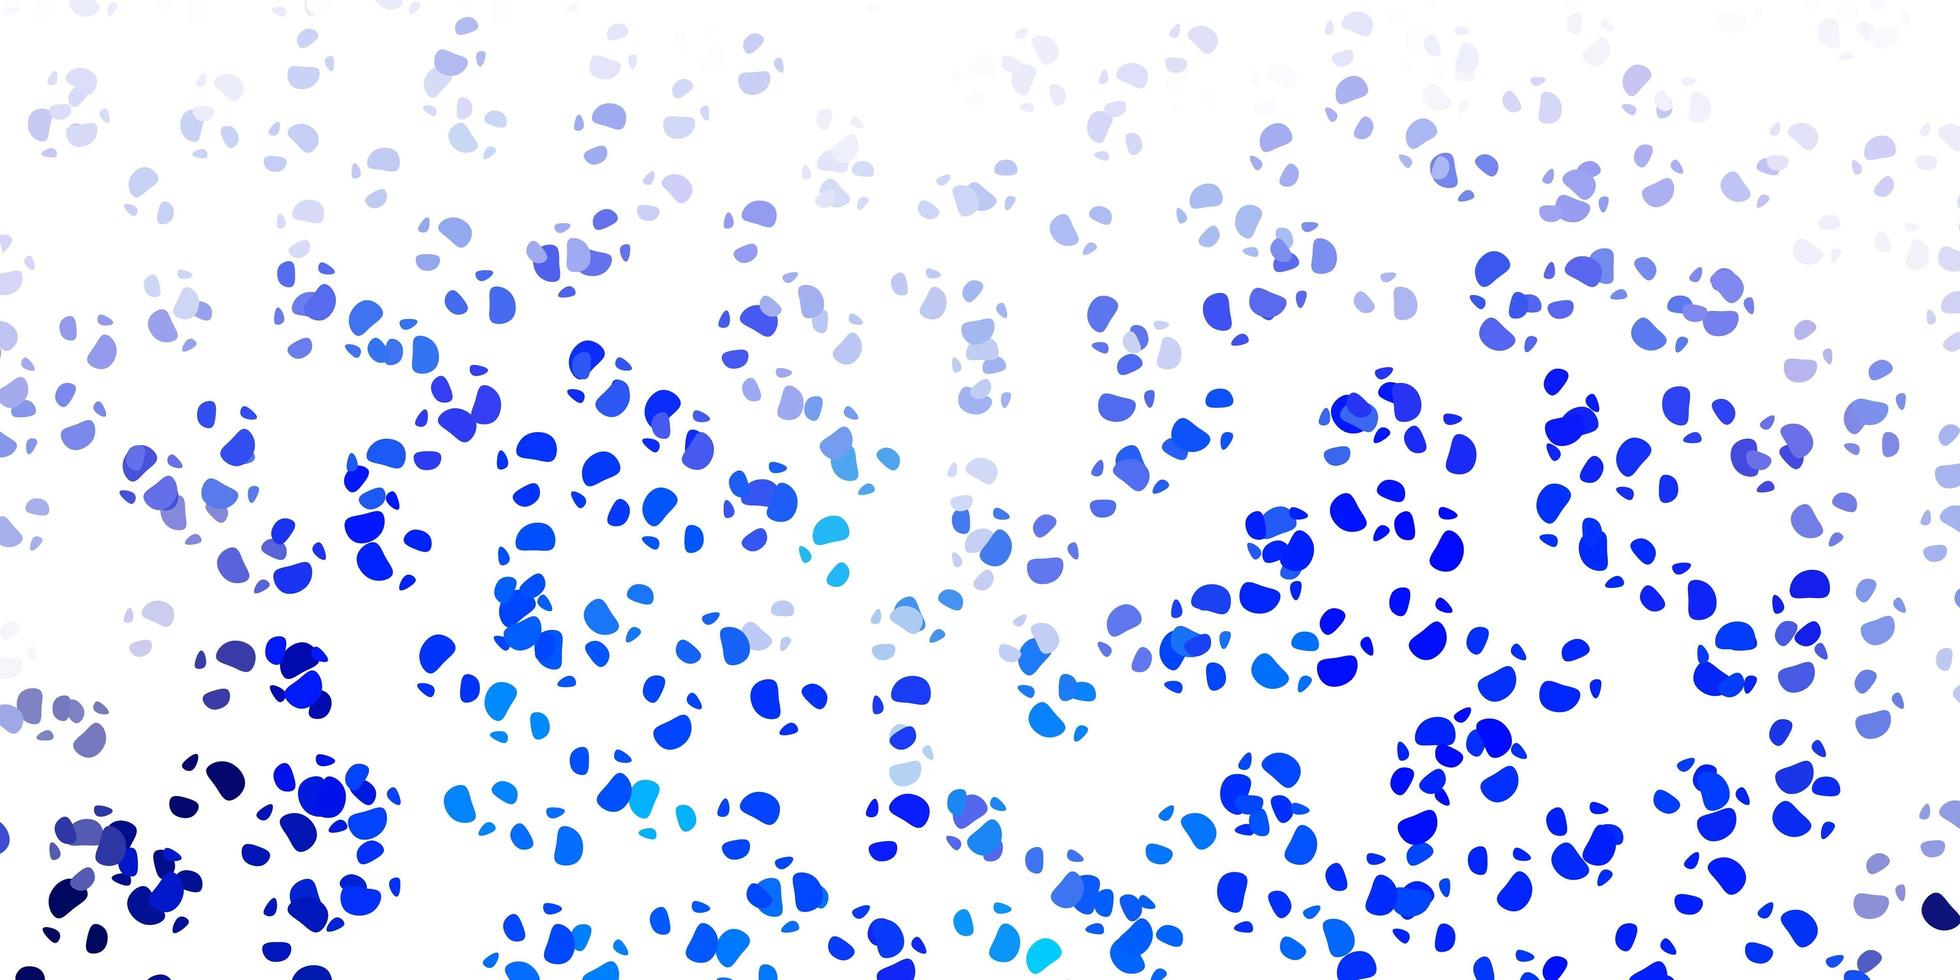 padrão de vetor azul claro com formas abstratas